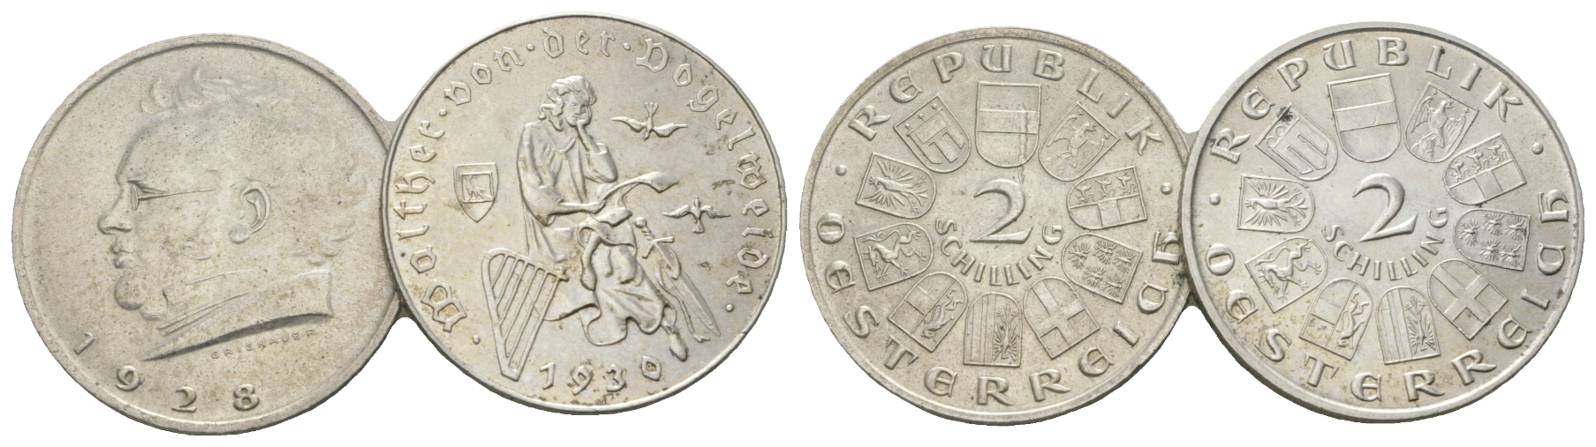  Österreich, 2 Schilling 1928/1930 (2 Kleinmünzen)   